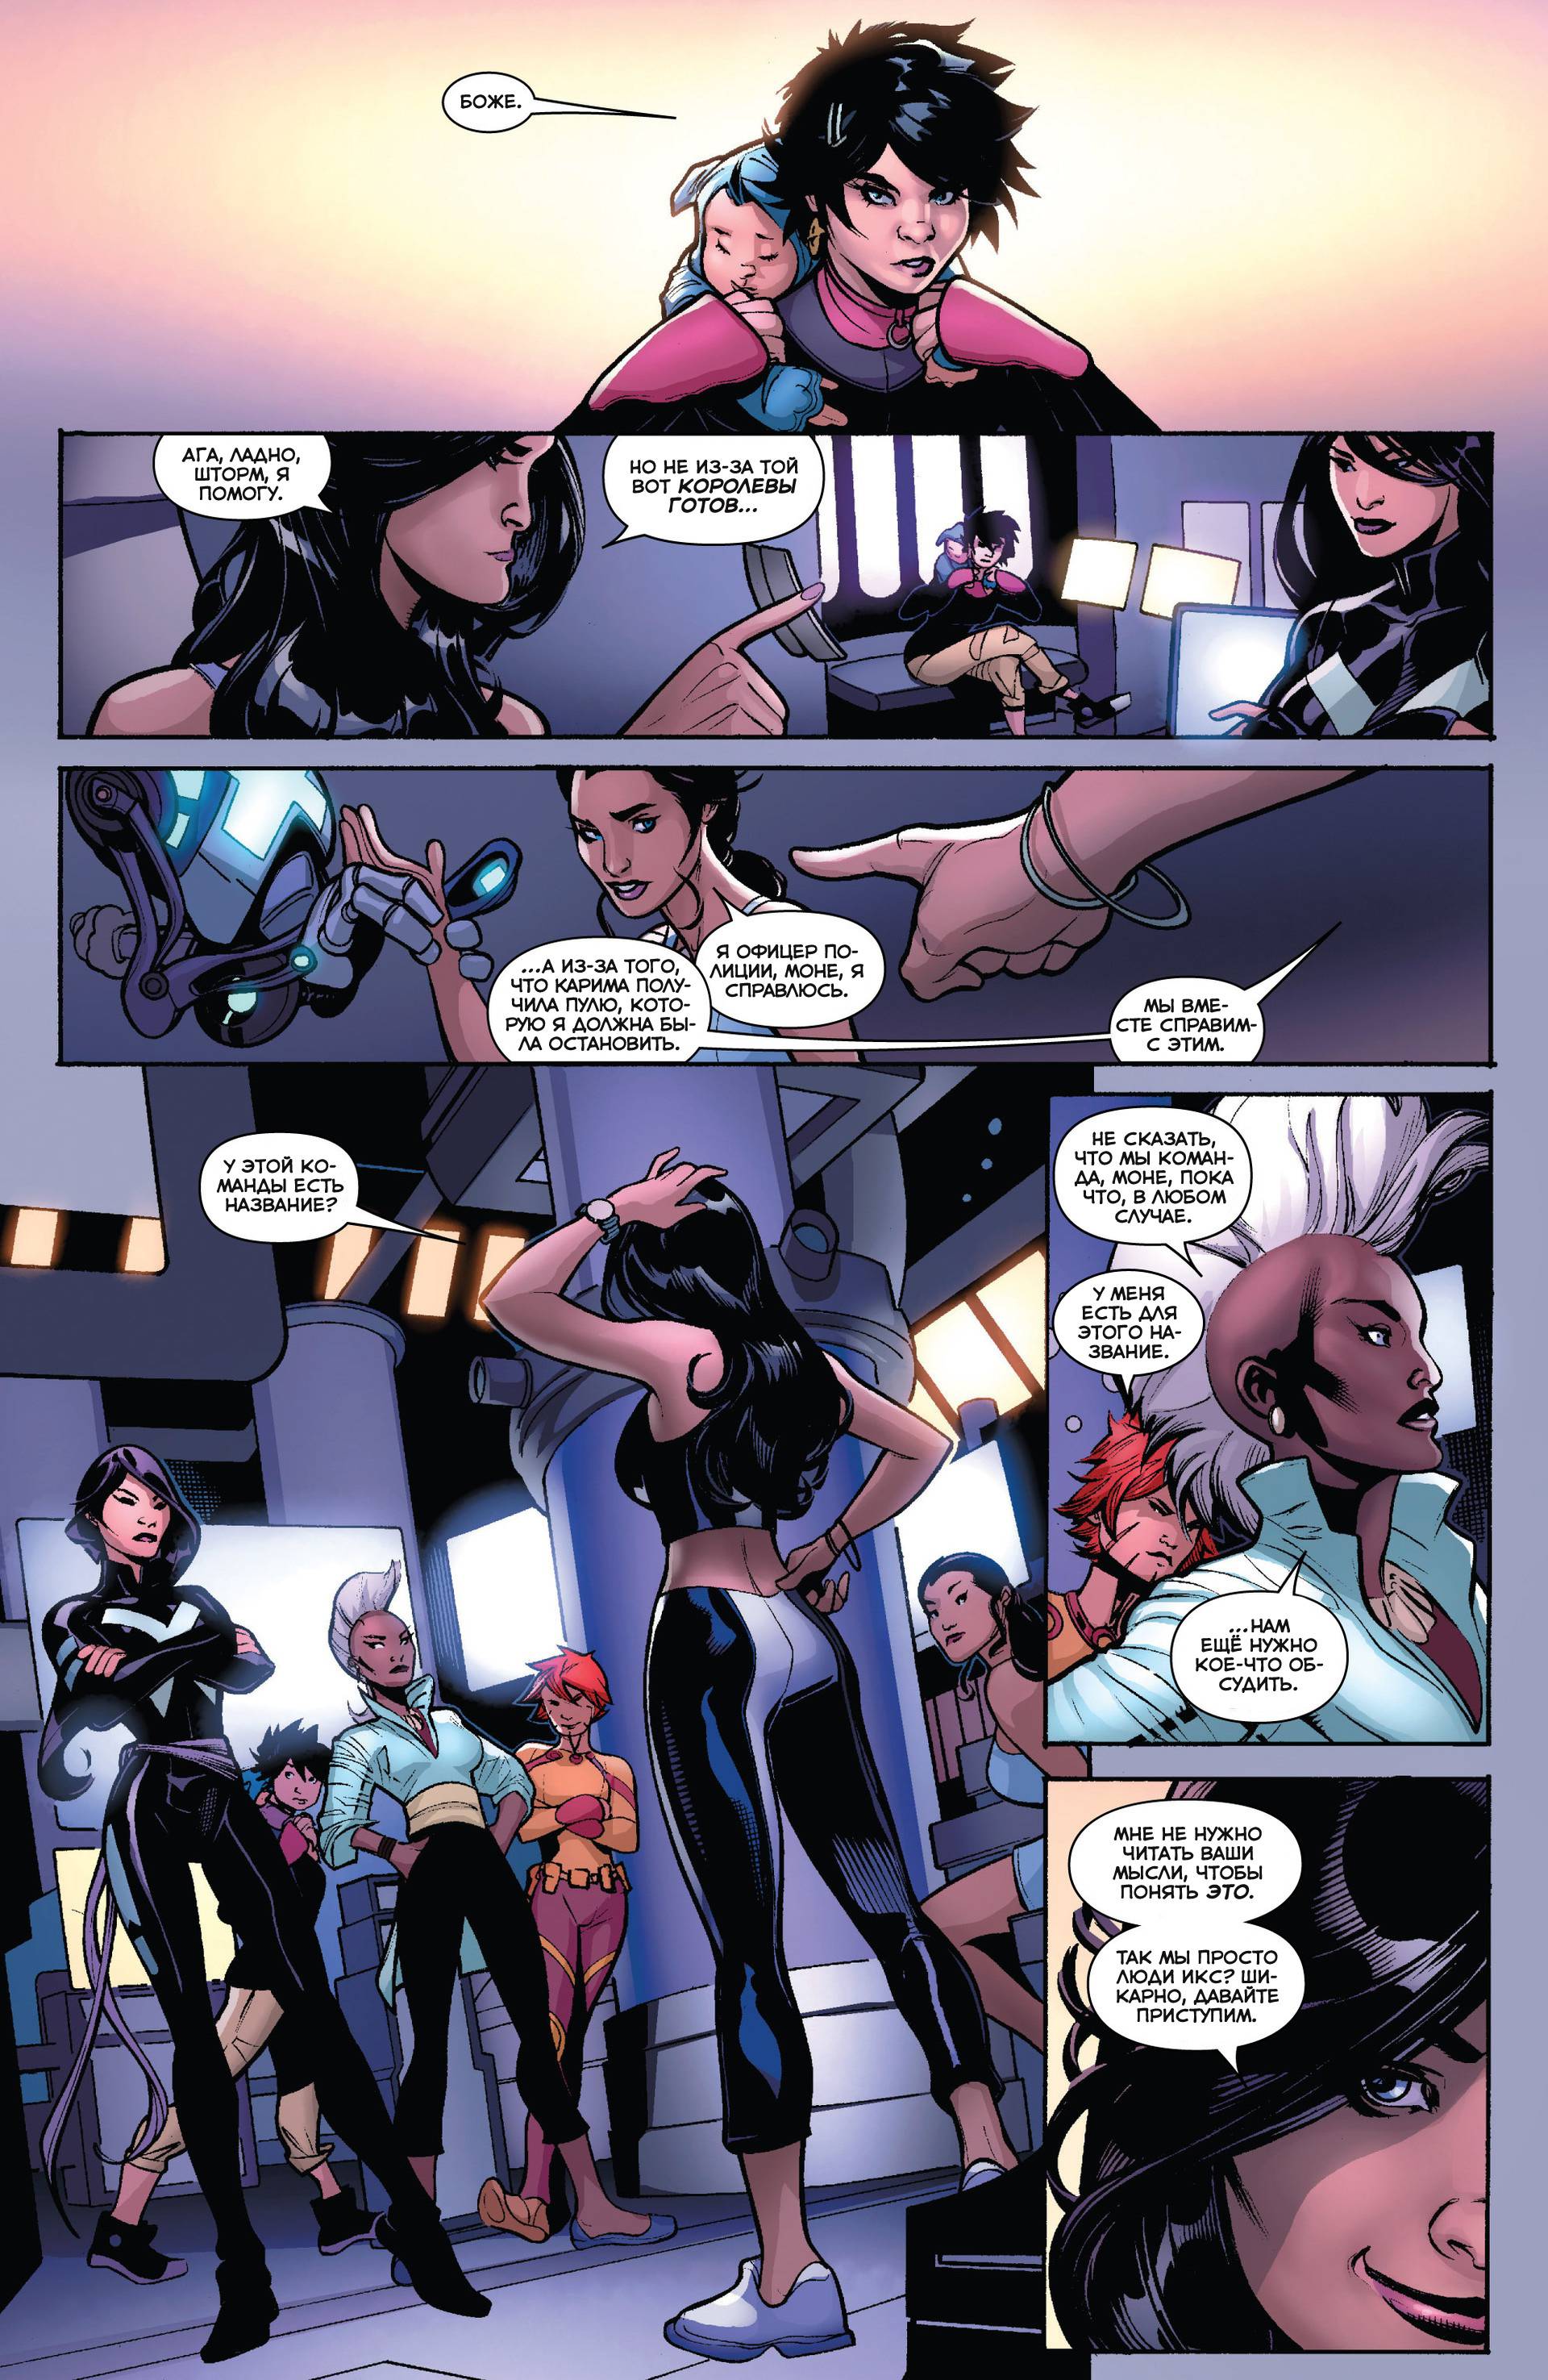 Люди-Икс №7 (X-Men #7) - страница 19 - читать комикс онлайн бесплатно |  UniComics